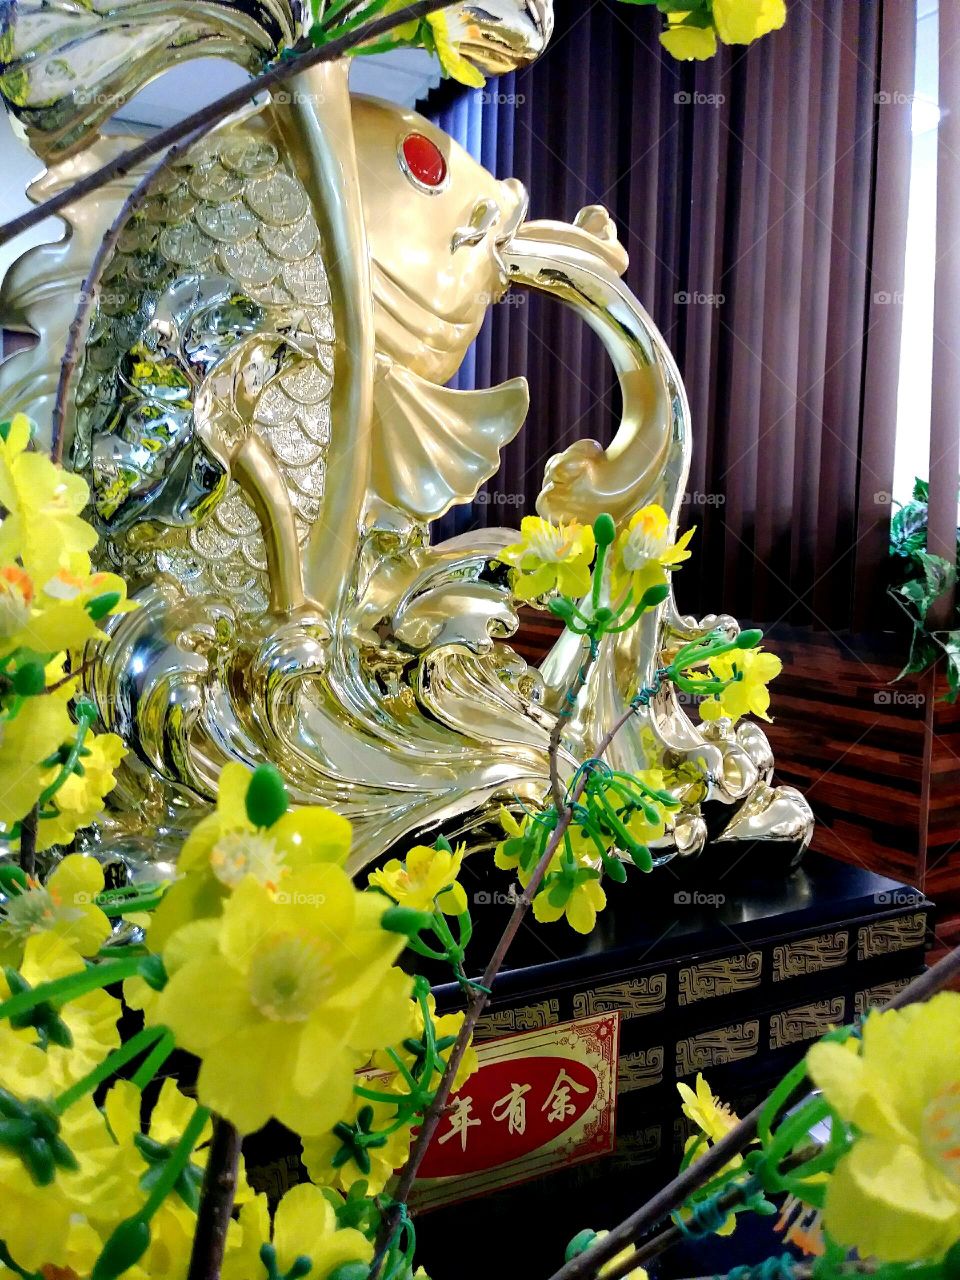 Gold Koi fish statue